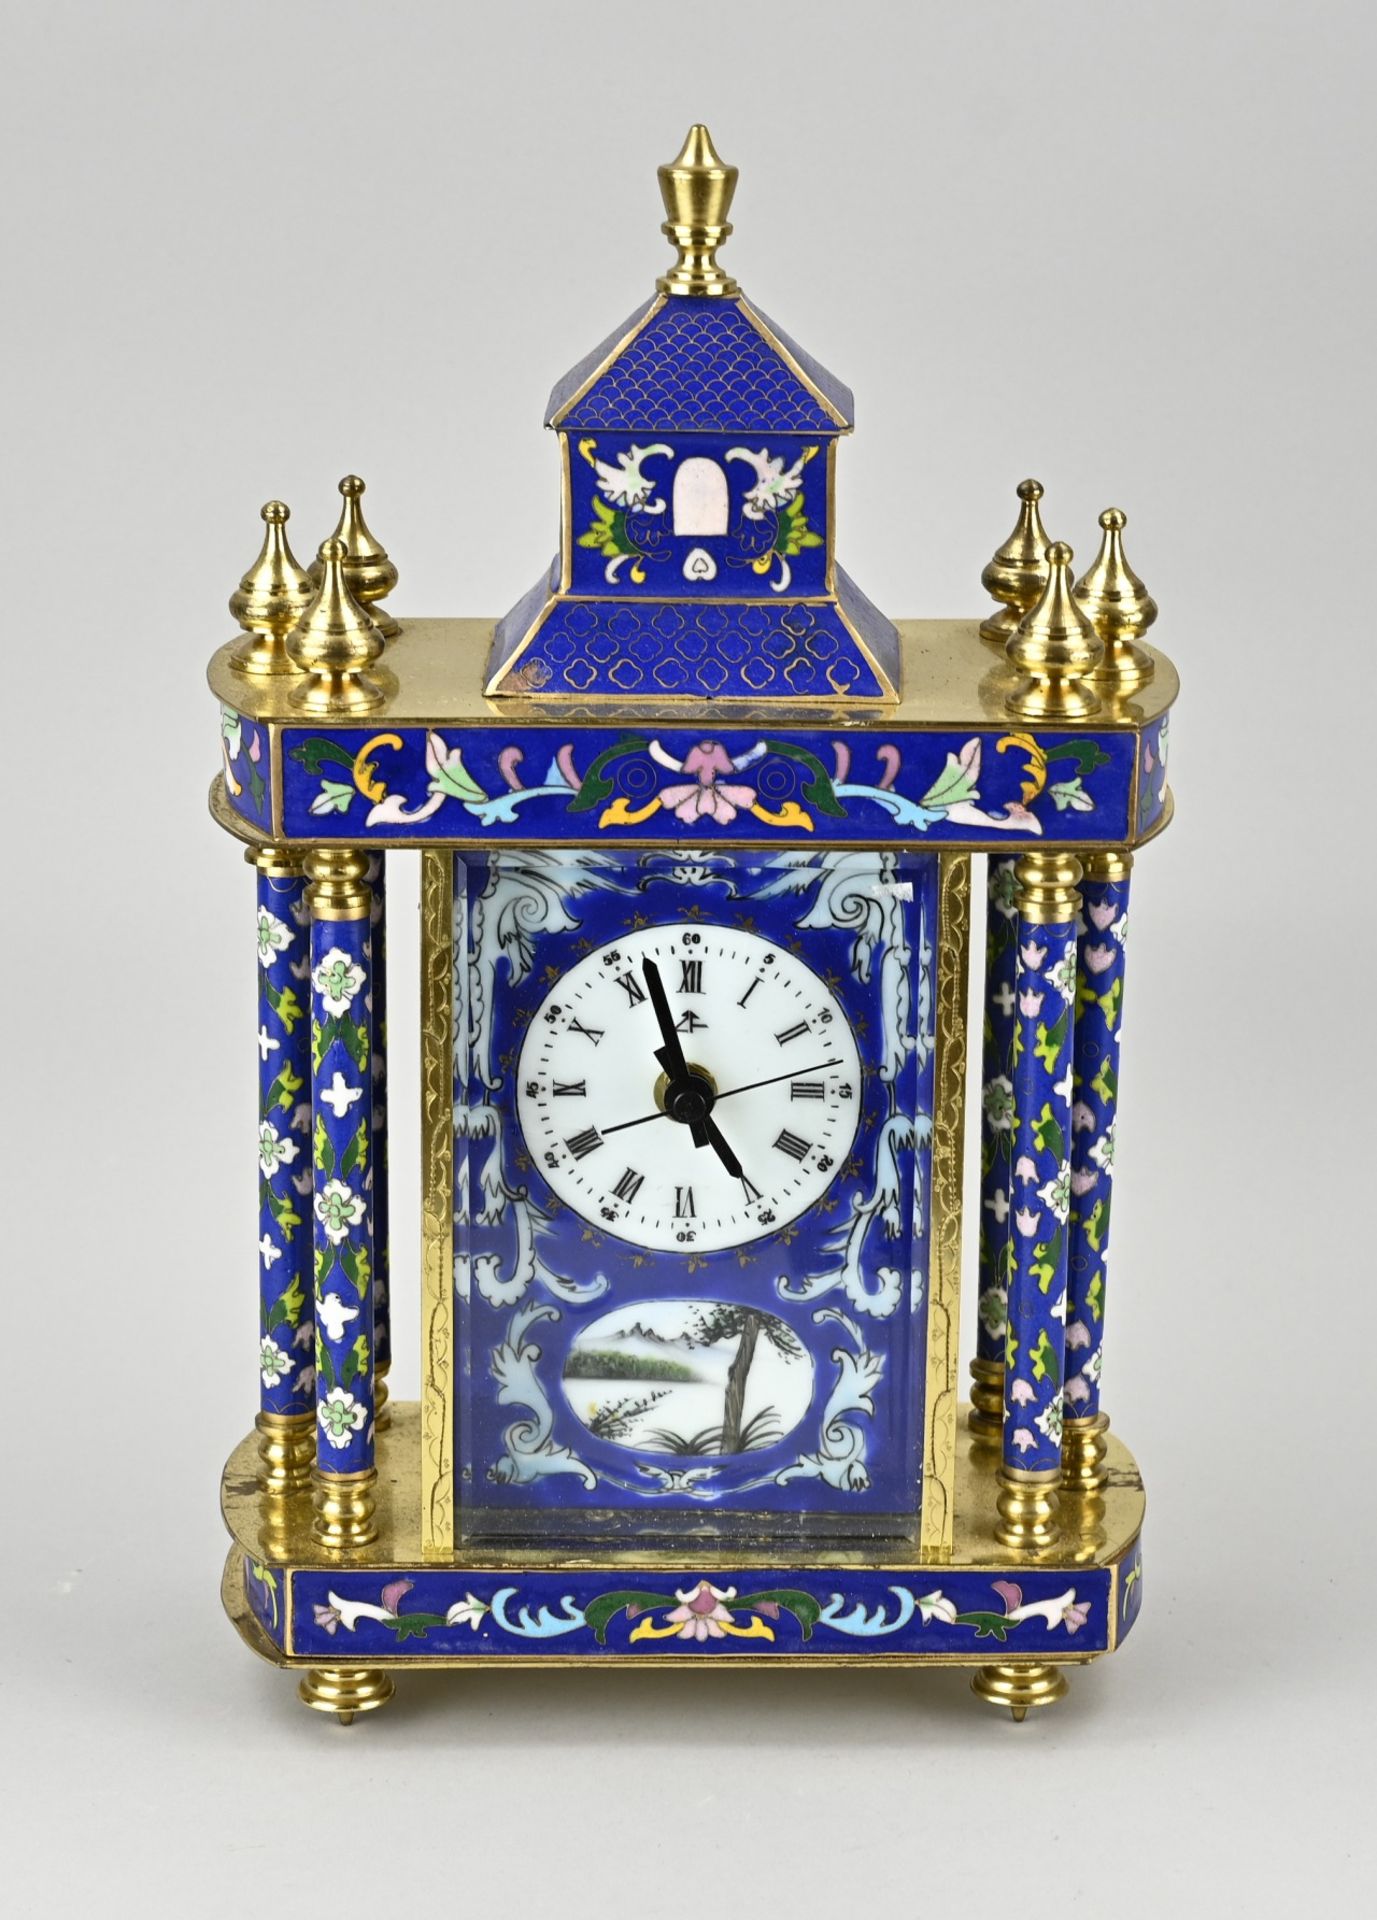 CloisonnÃ© clock